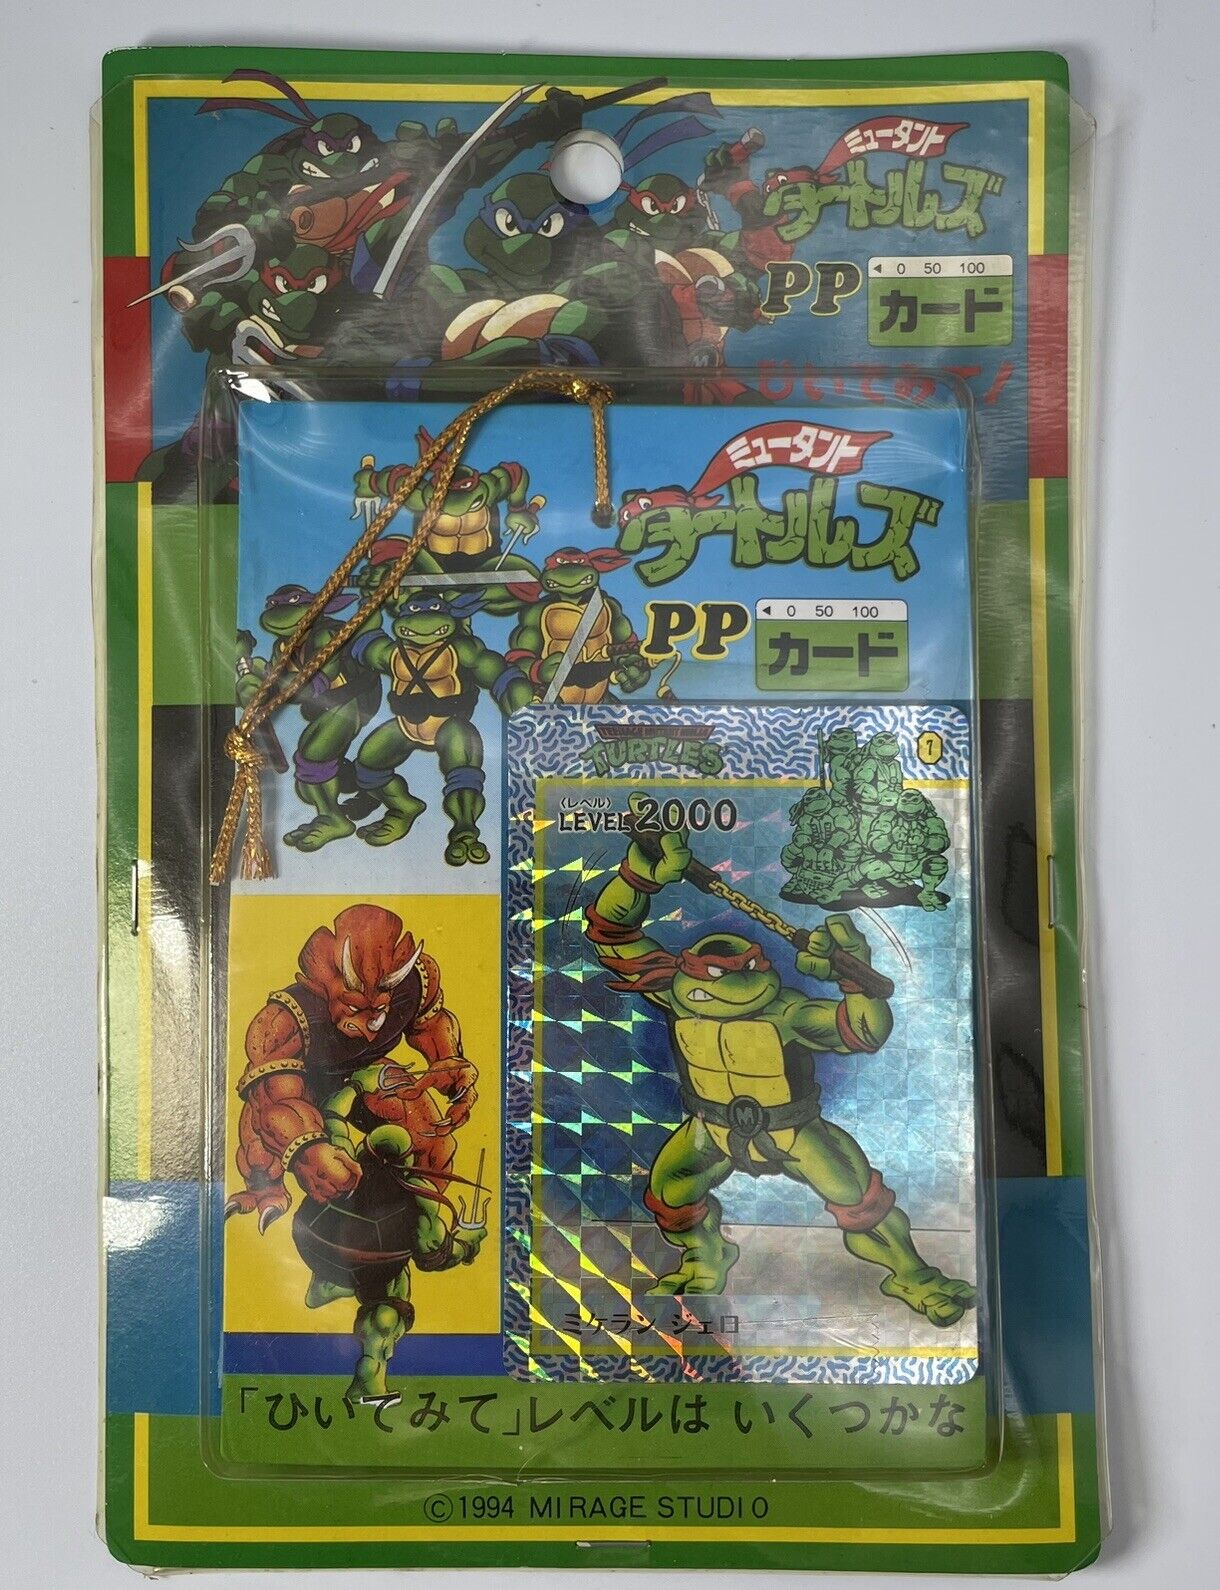 1994 mutant turtles rare PP Card Unopened retro TAKARA